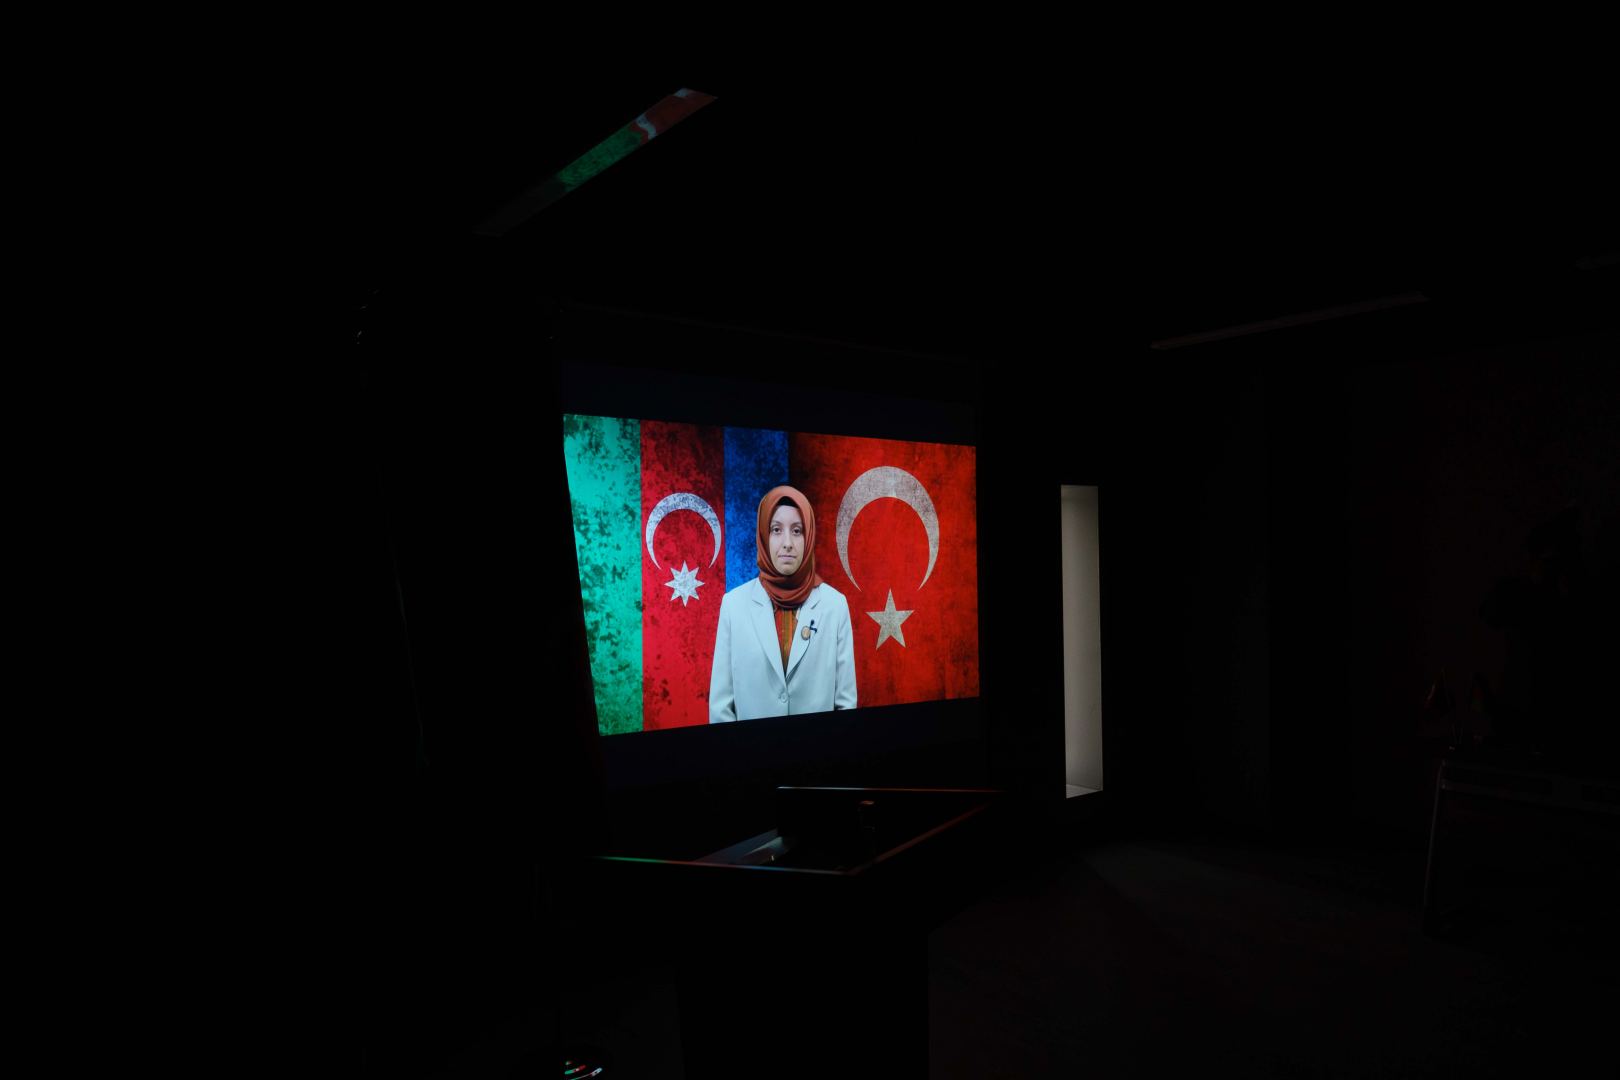 Türkiyə Gənclər Fondu Azərbaycanla həmrəyliyini bəyan etdi (FOTO) - Gallery Image